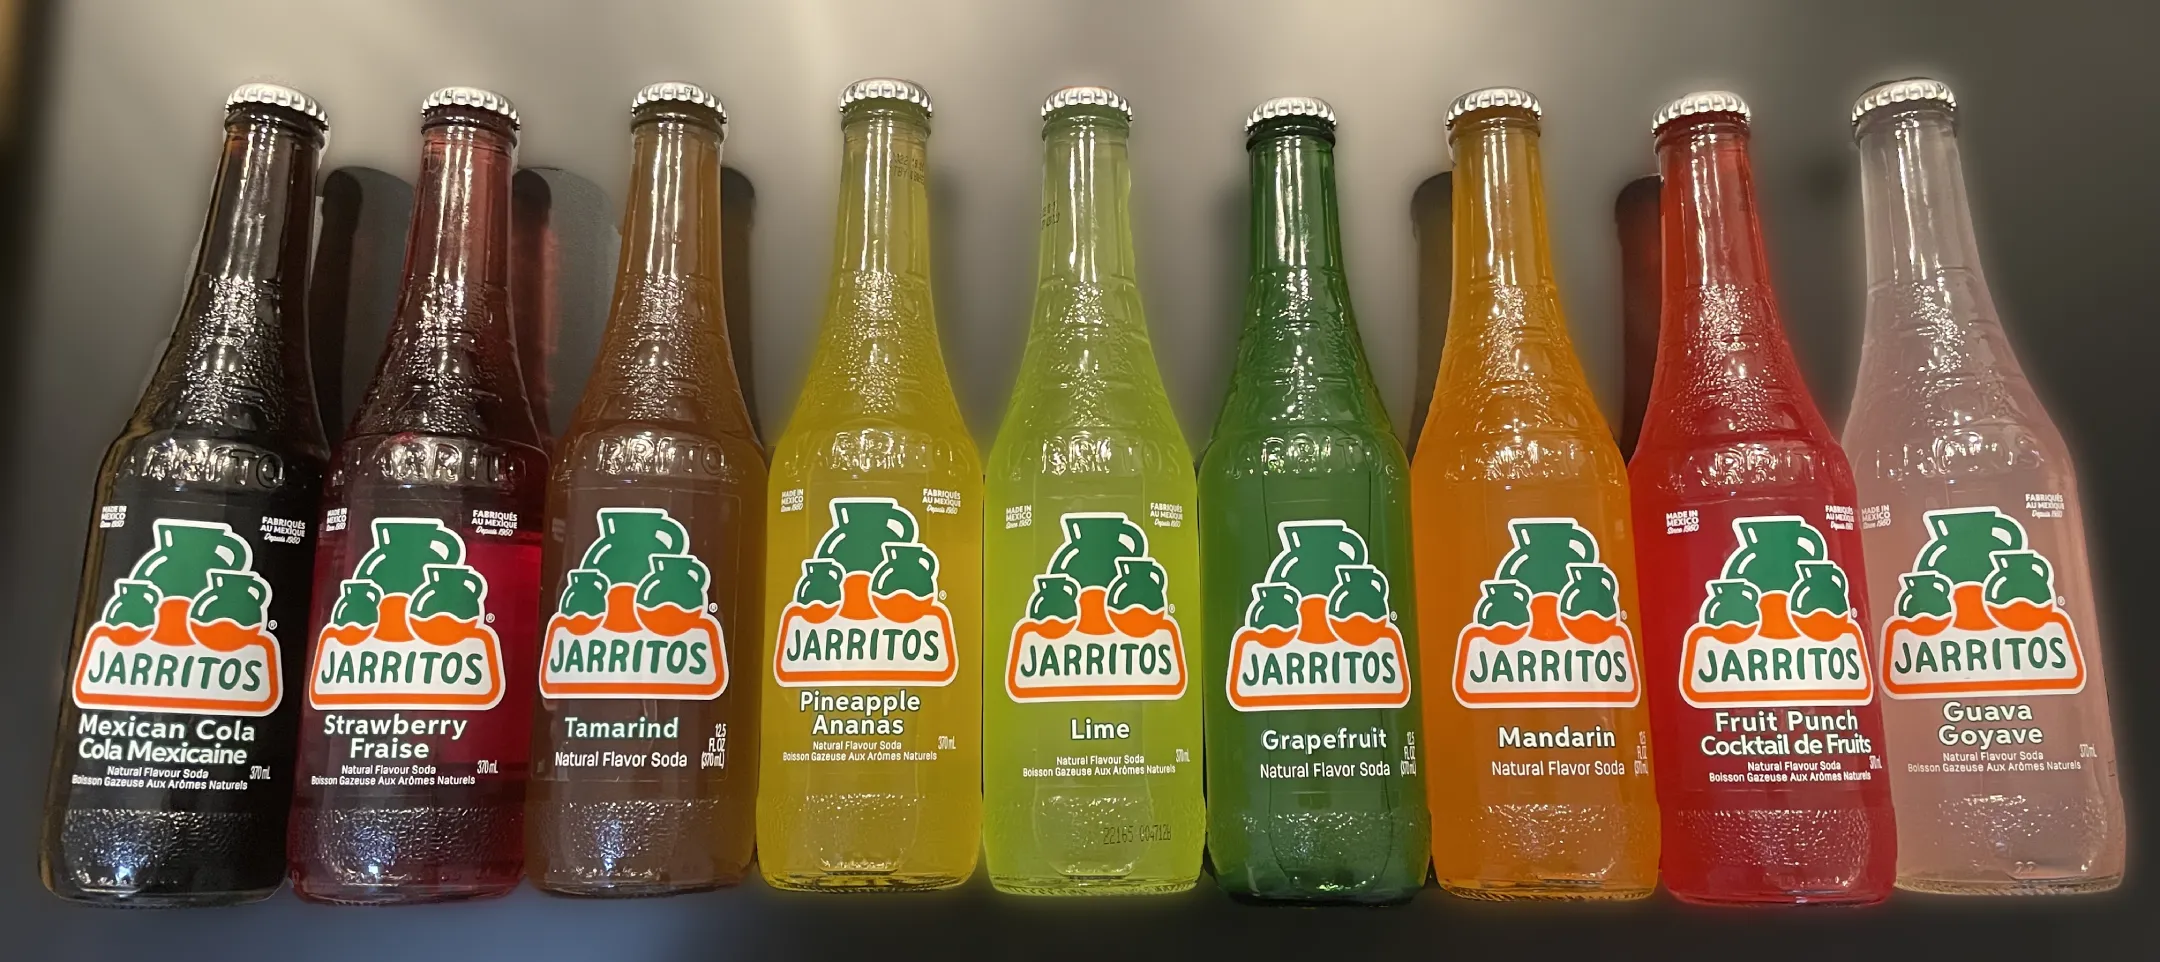 Best Jarritos Flavor